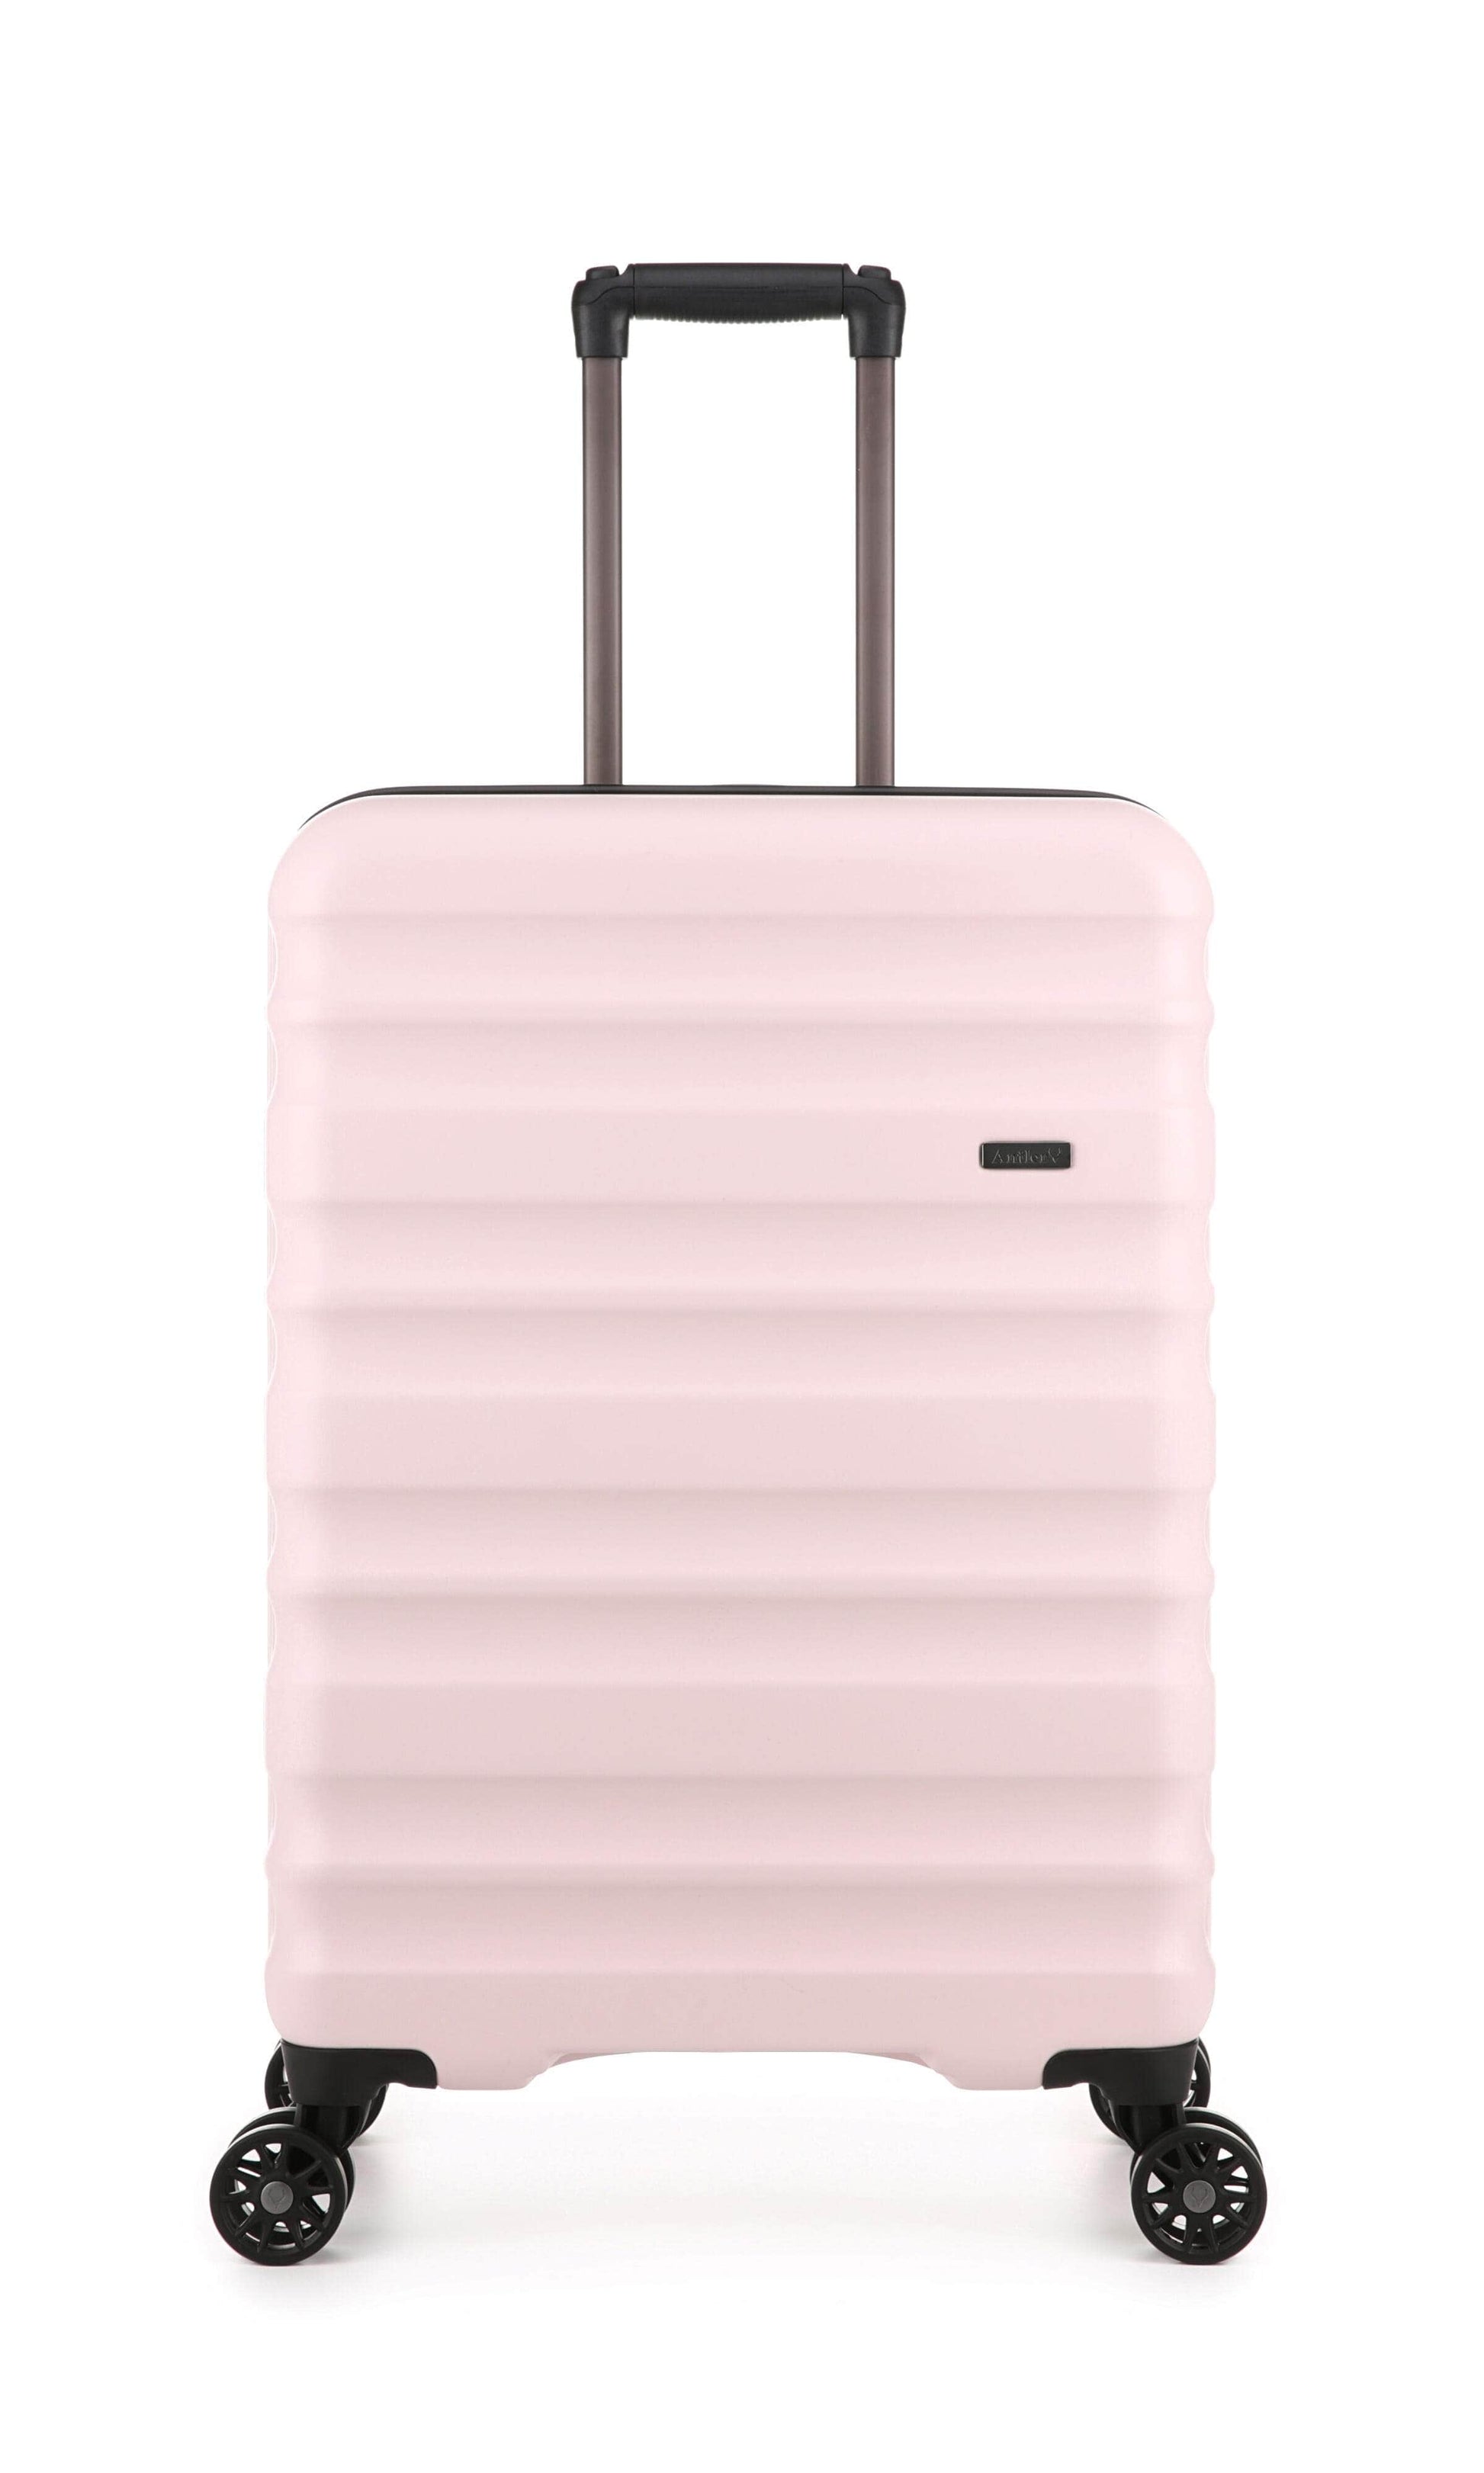 Antler Luggage -  Clifton set in blush - Hard Suitcases Clifton Set of 3 Suitcases Blush | Hard Suitcase | Antler UK